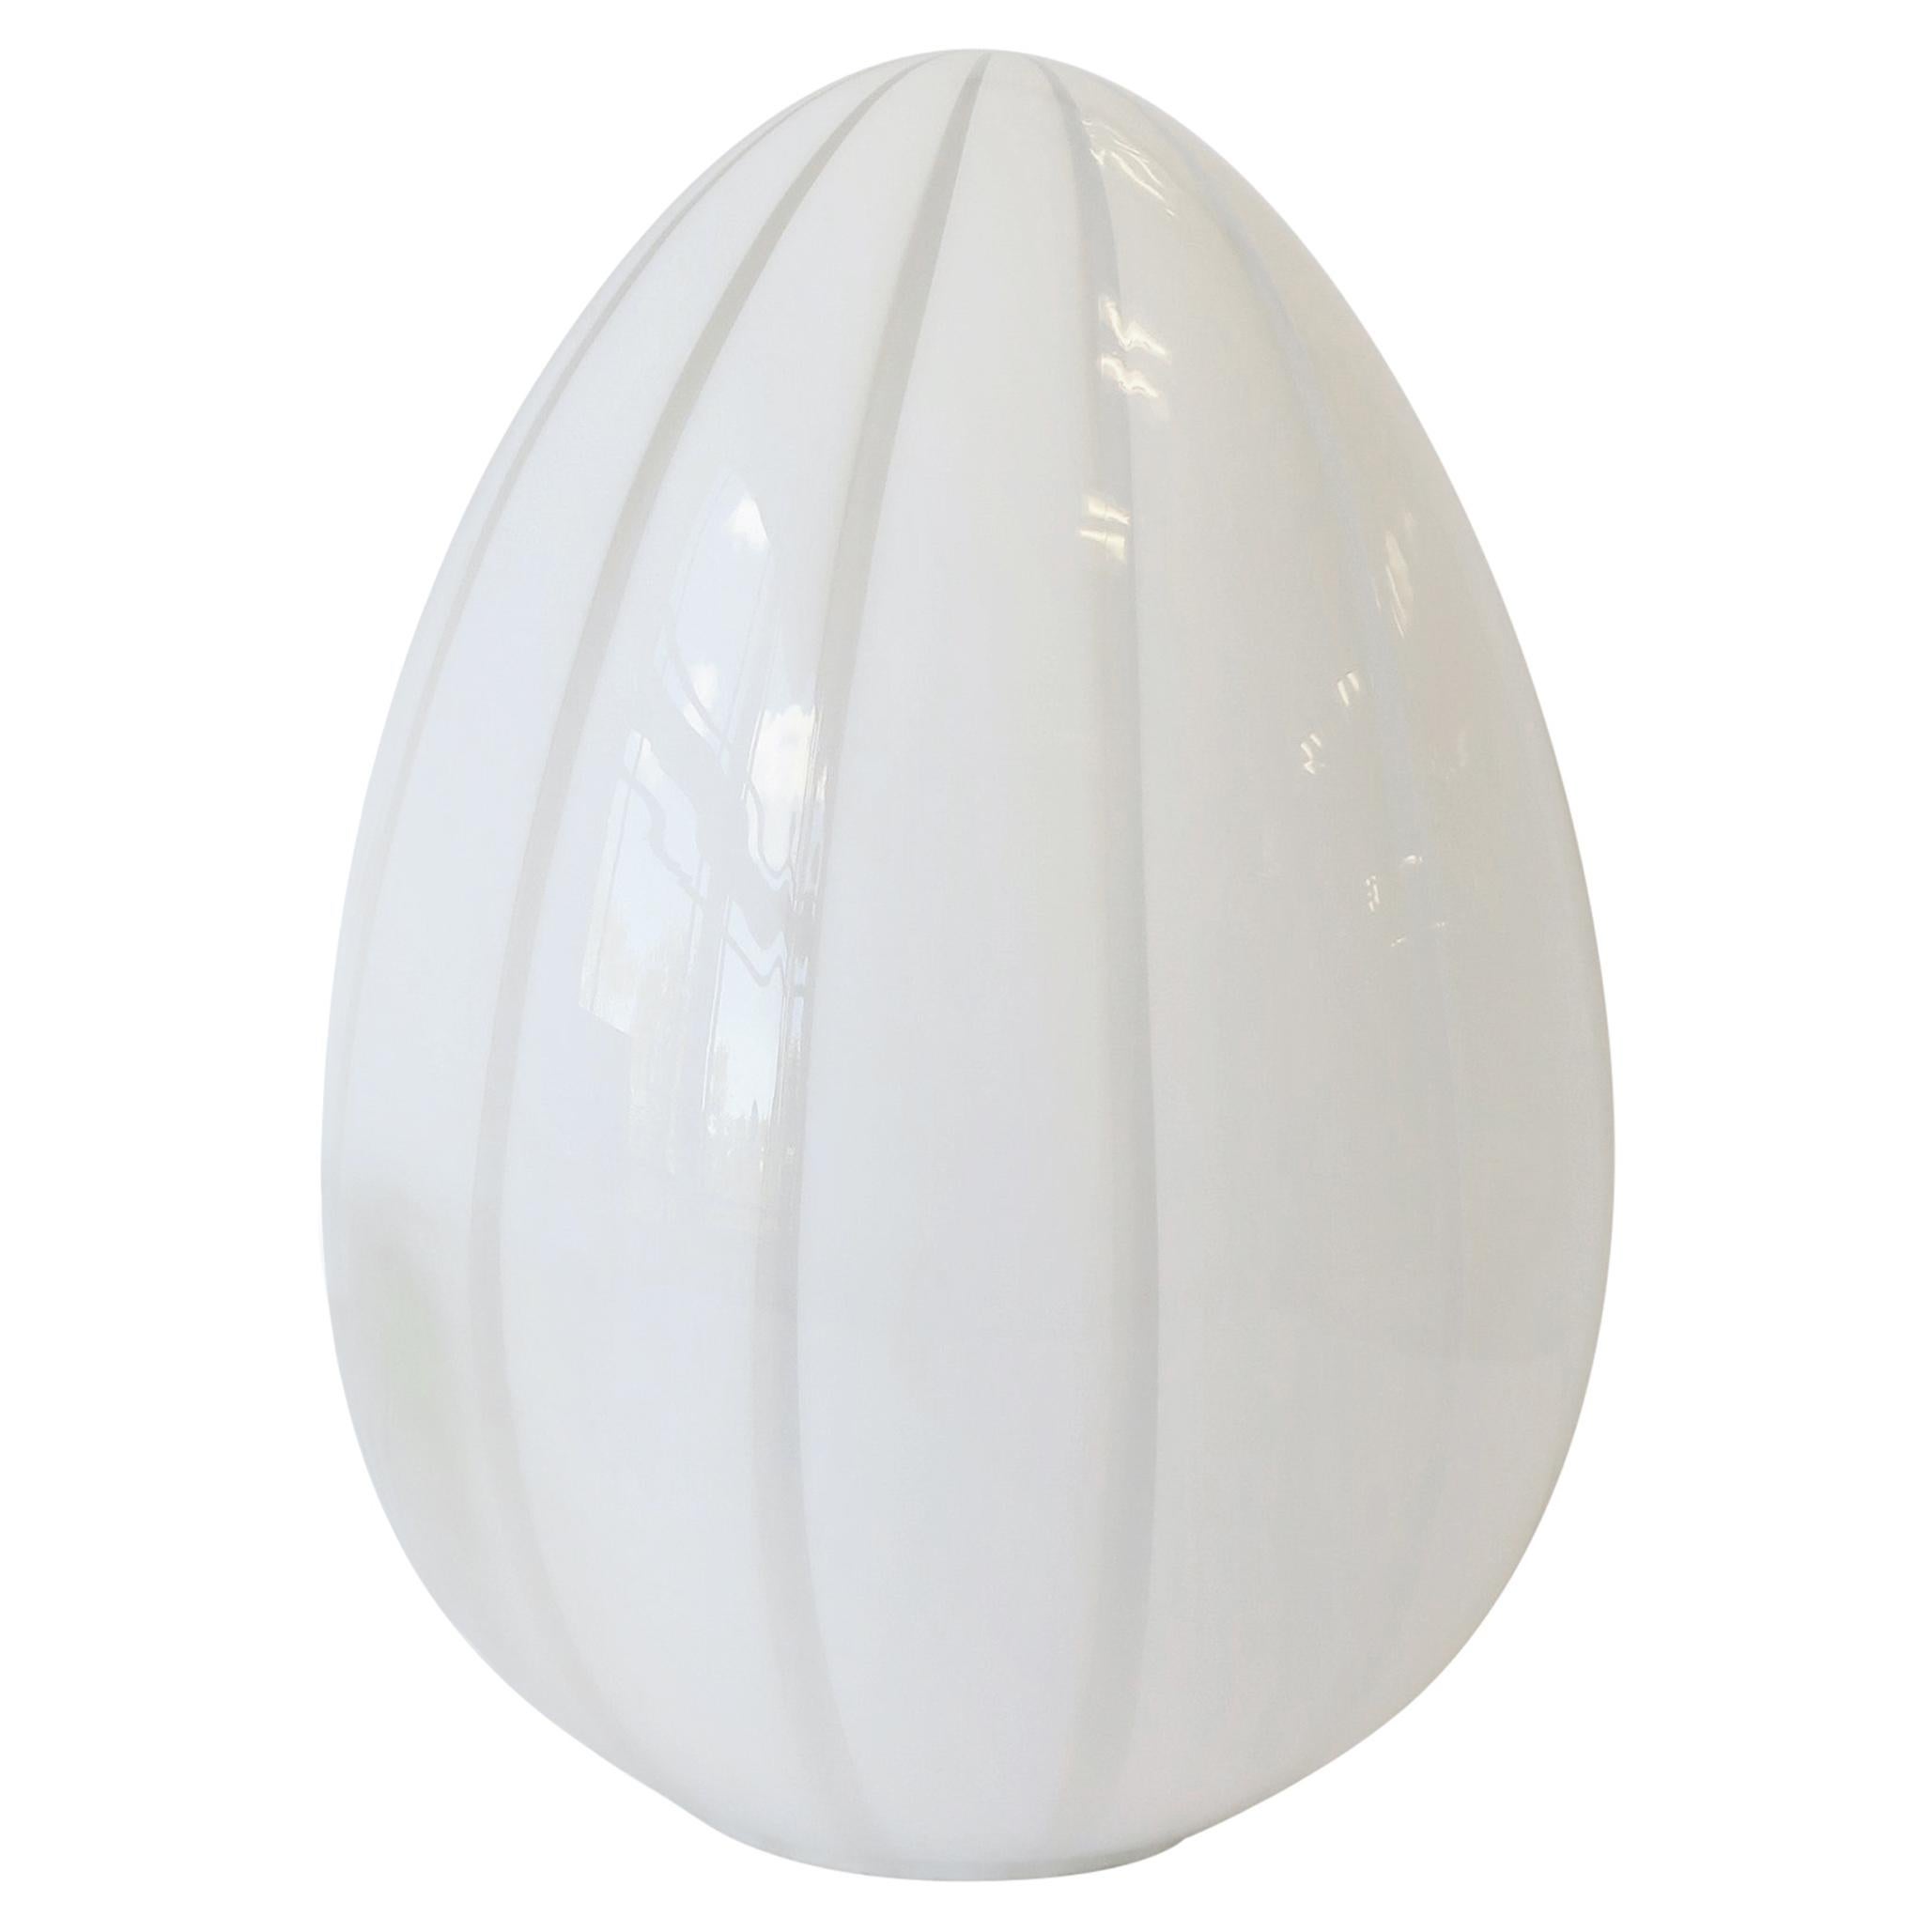 Italian Modern Vetri Murano White Egg-Shape Art Glass Table Lamp, circa 1970s 